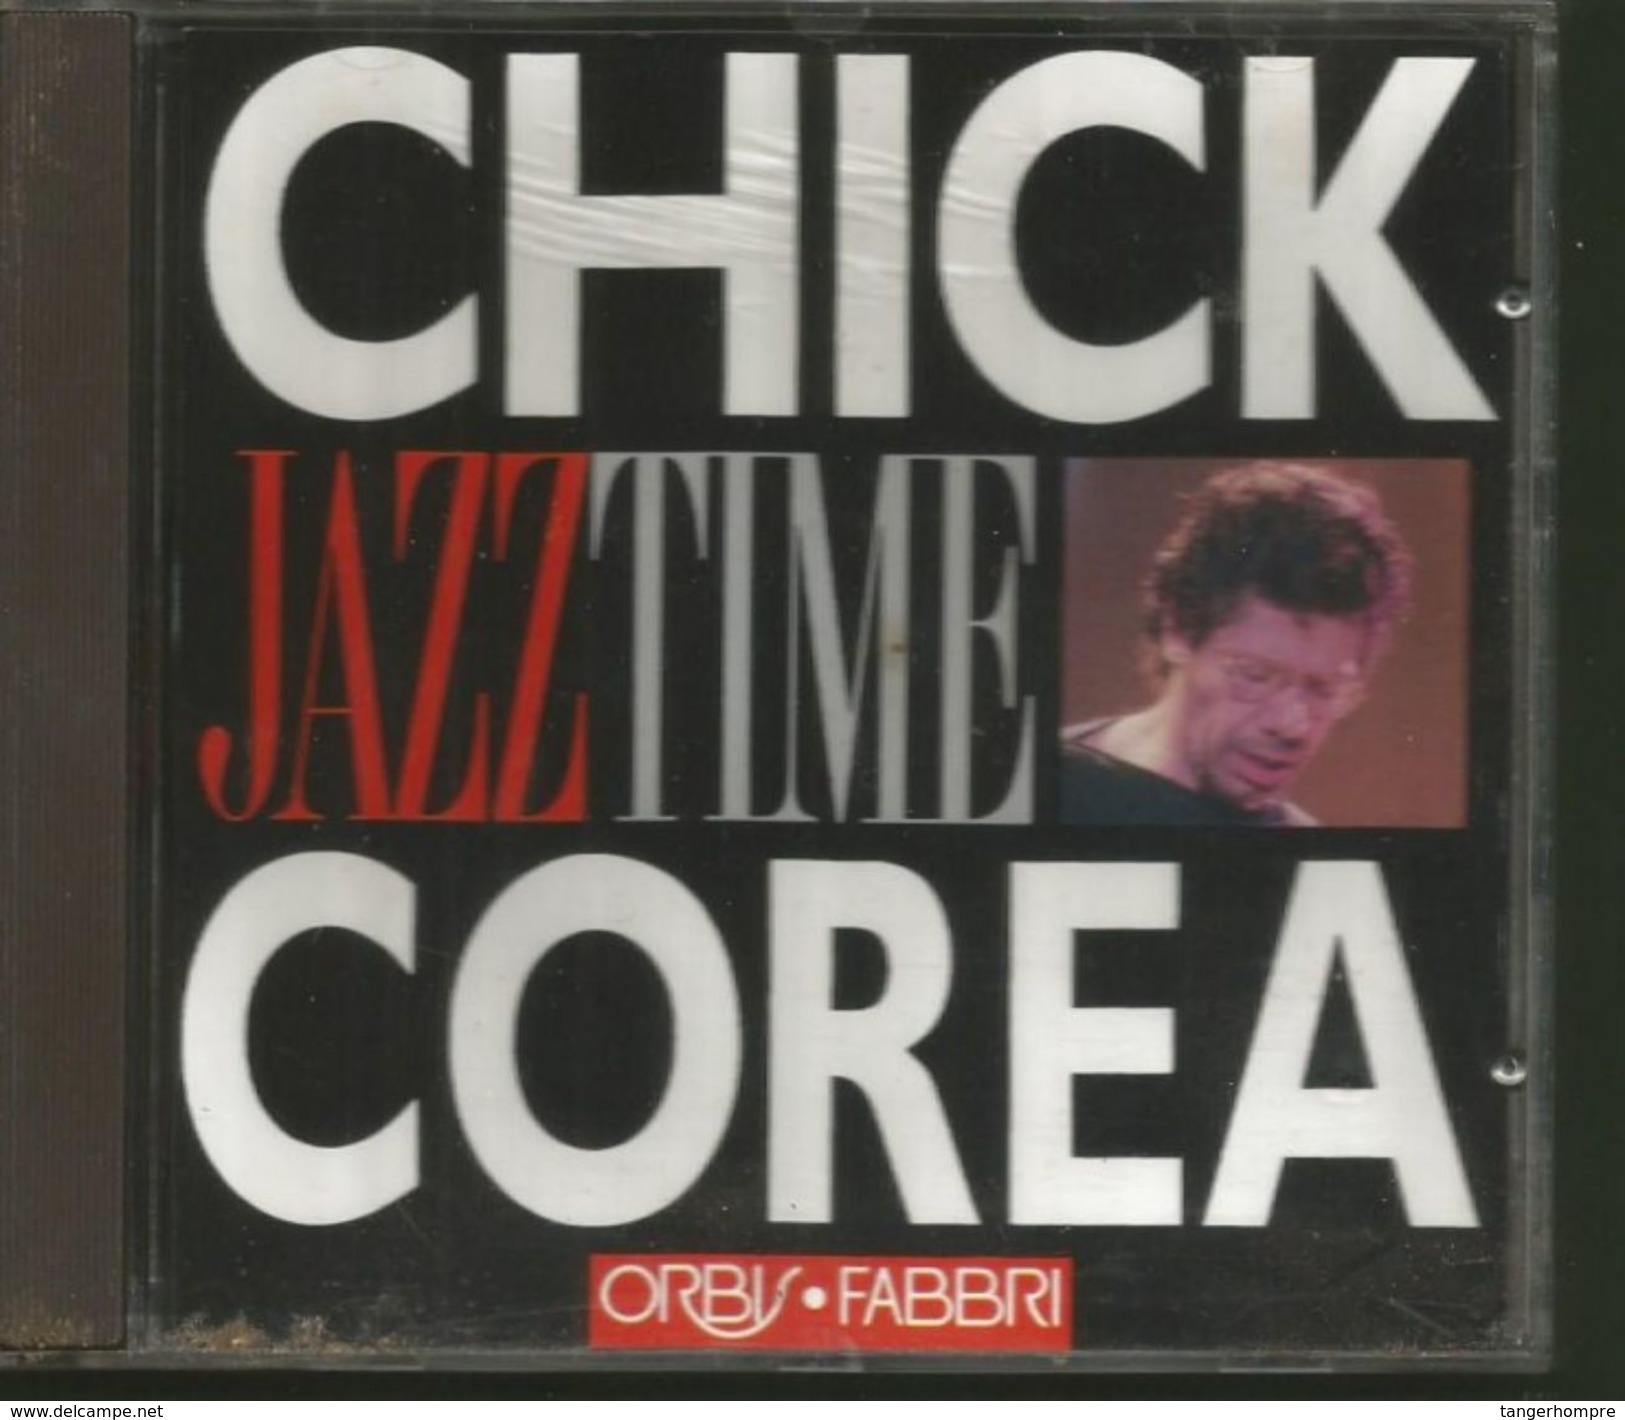 über 60 Minuten Jazz Von Chick Corea Von 1970 - 77 - Jazz Of Finest From 1970 - 77 - Jazz